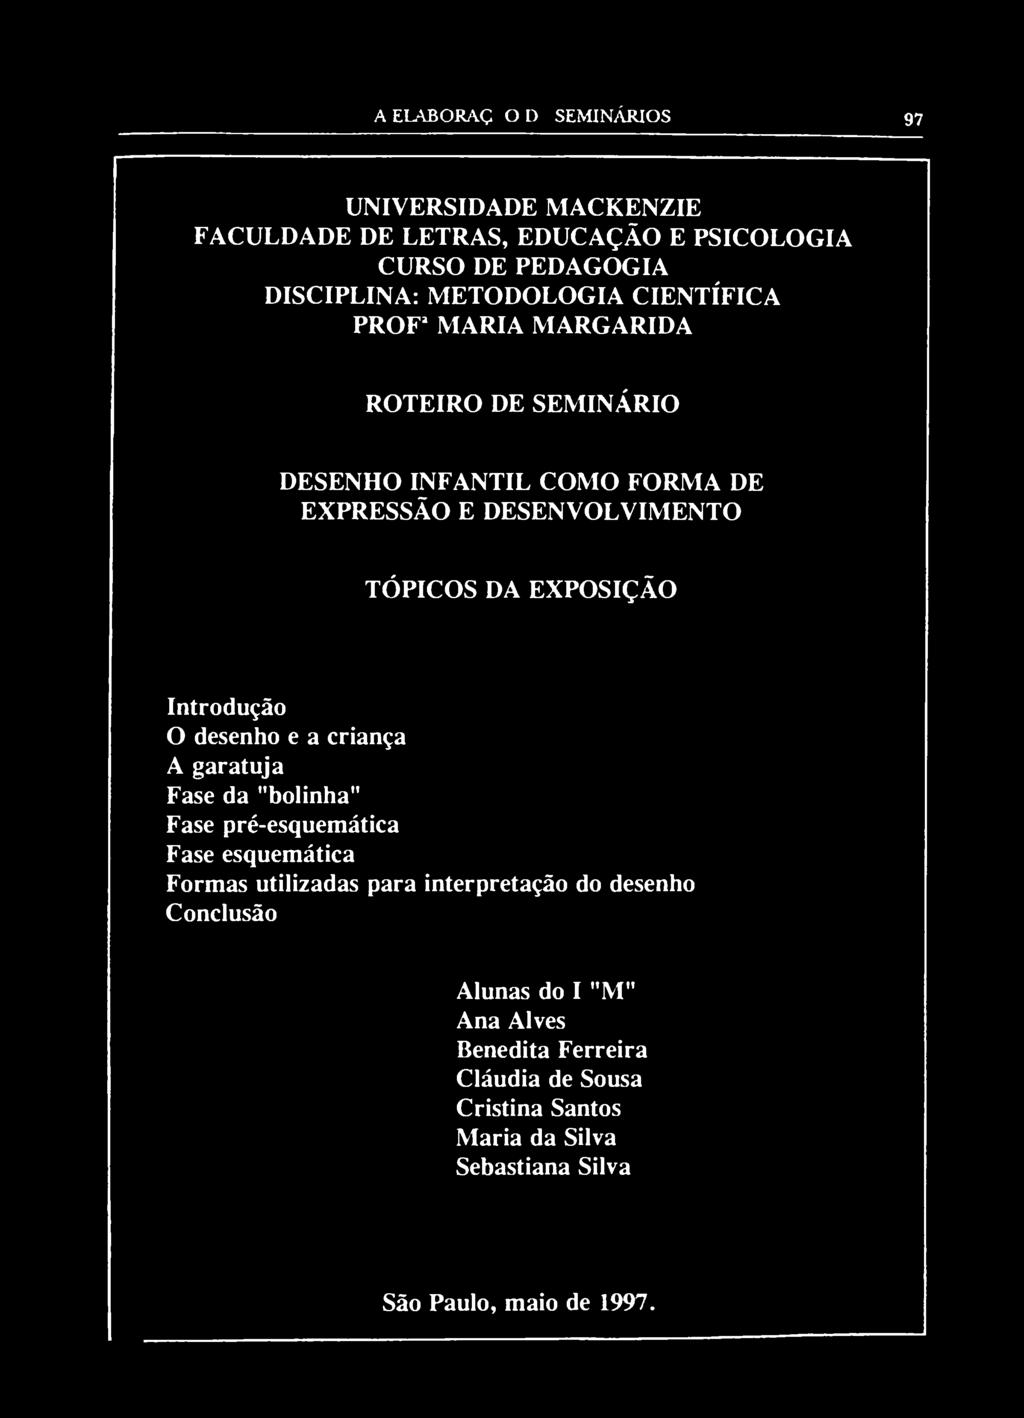 UNIVERSIDADE MACKENZIE FACULDADE DE LETRAS, EDUCAÇÃO E PSICOLOGIA CURSO DE PEDAGOGIA DISCIPLINA: METODOLOGIA CIENTÍFICA PROF 1 MARIA MARGARIDA ROTEIRO DE SEMINÁRIO DESENHO INFANTIL COMO FORMA DE